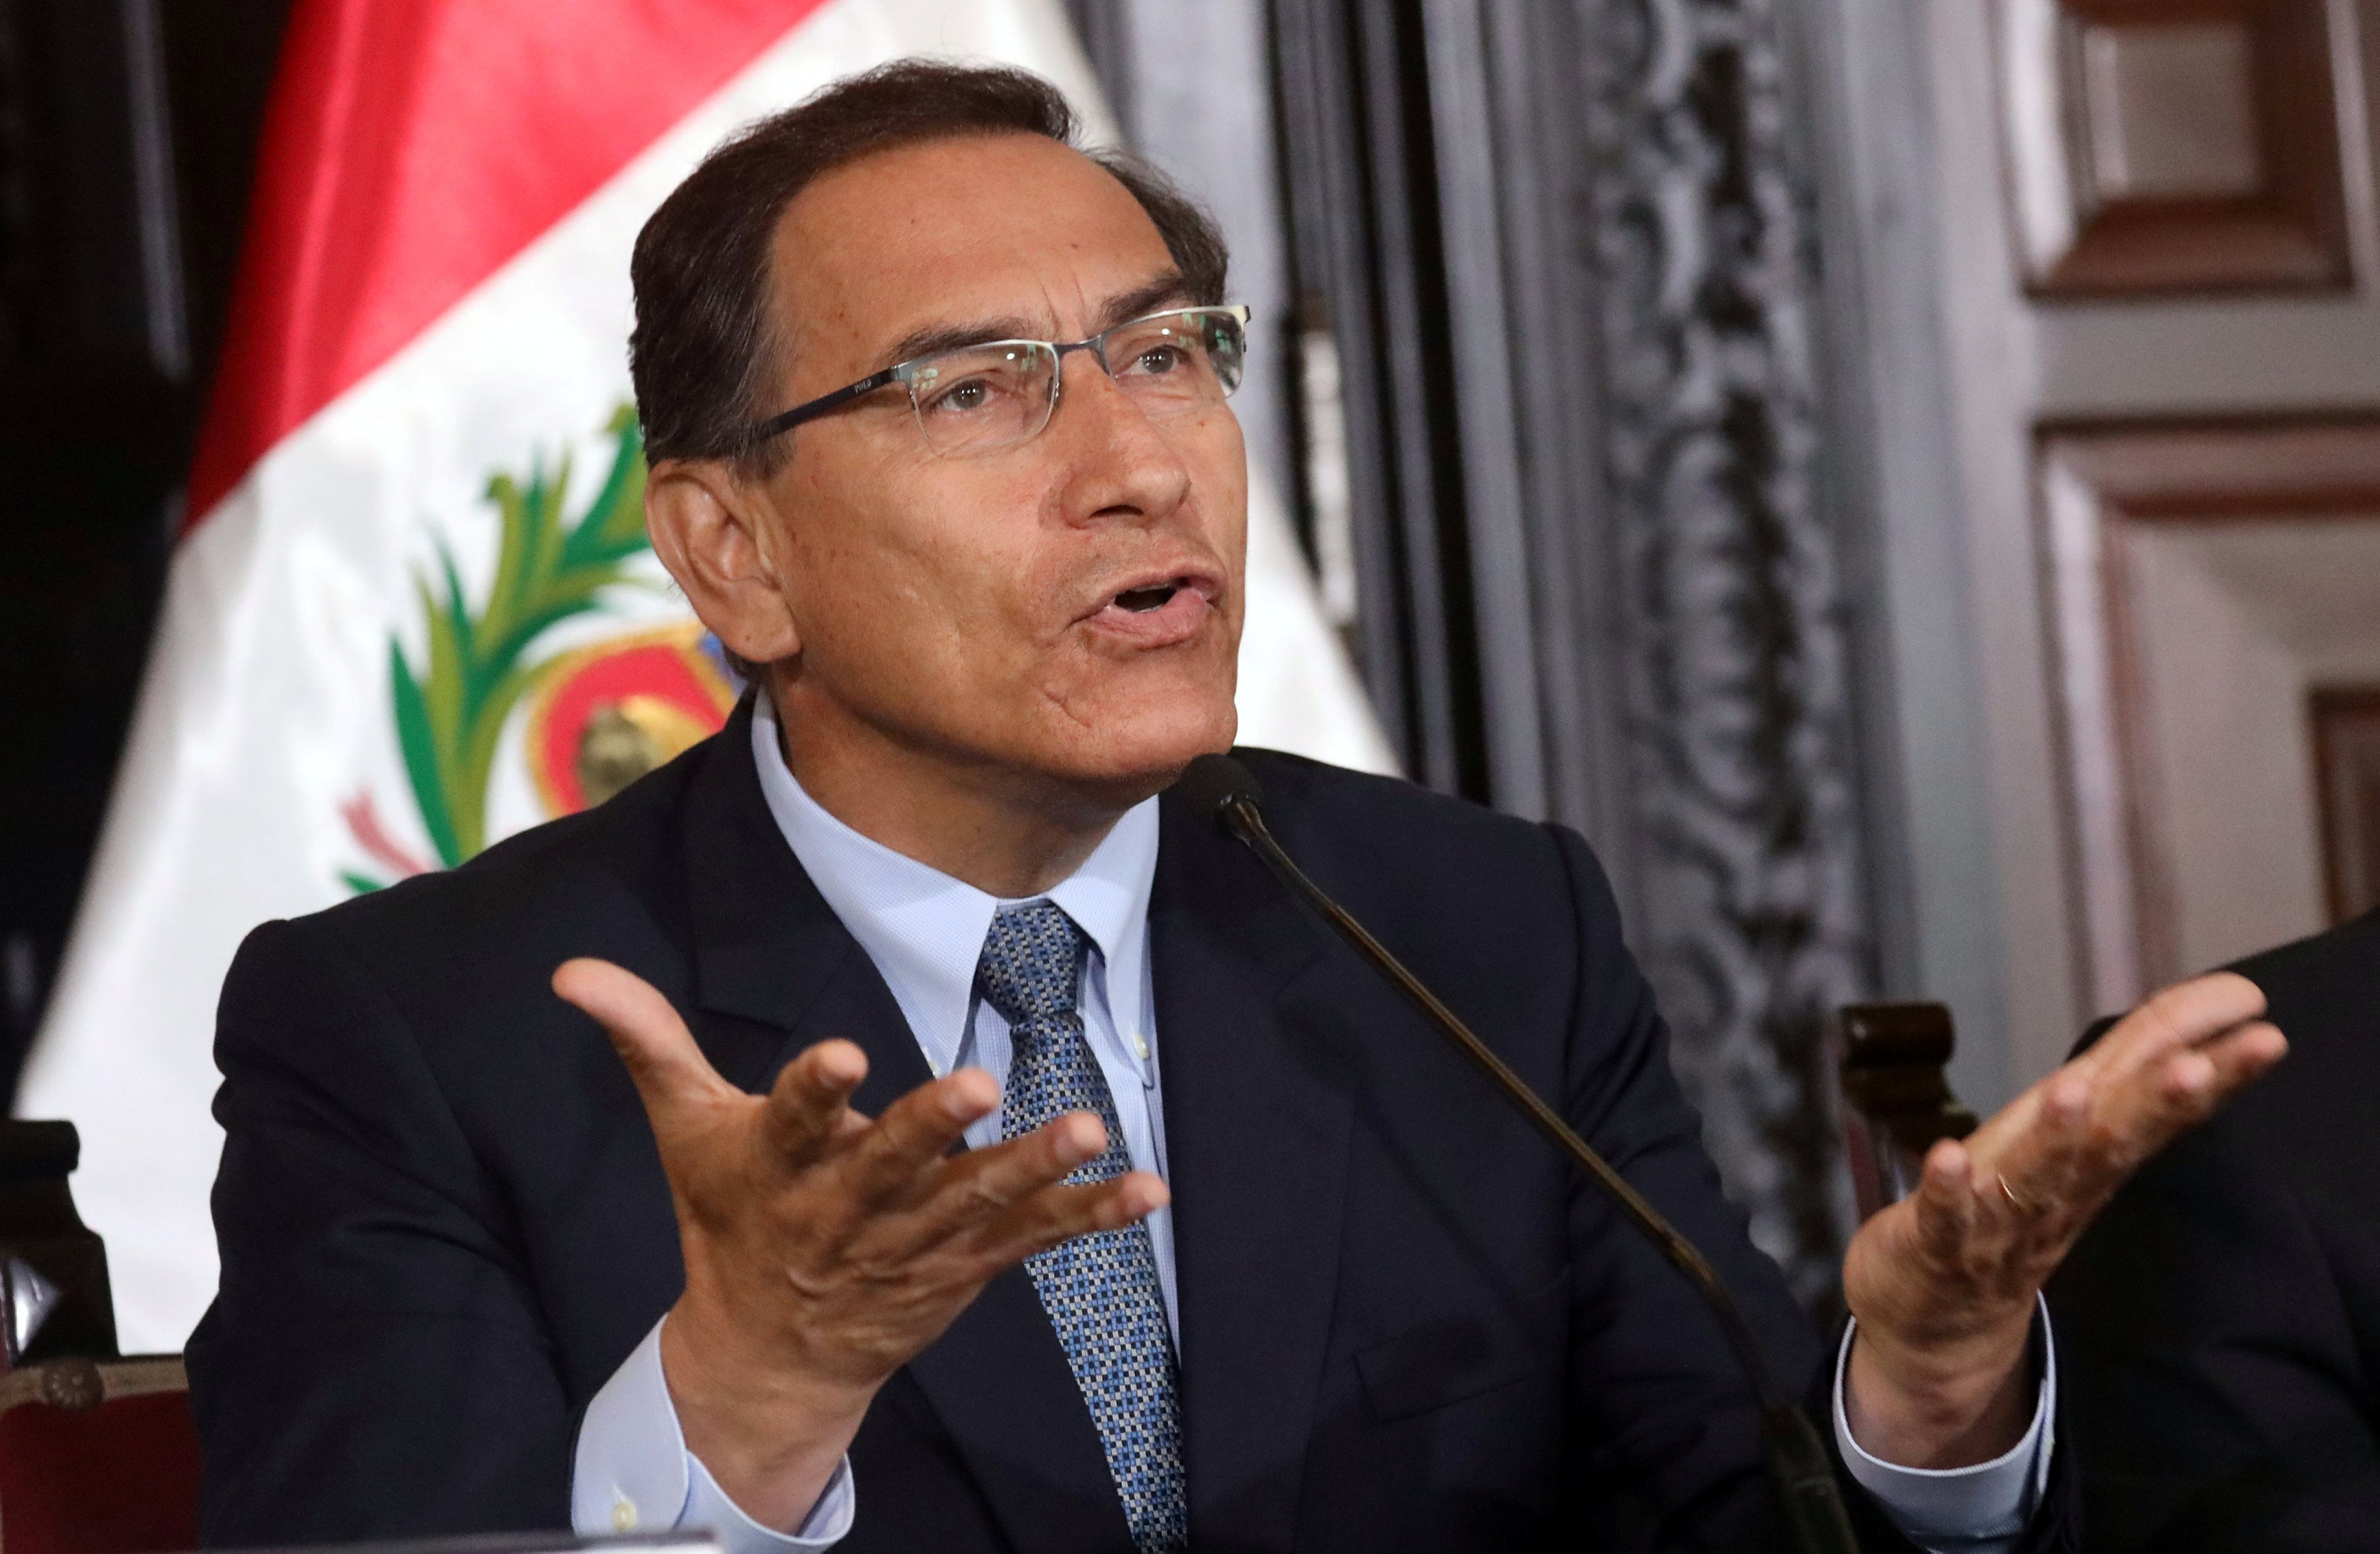 Vizcarra hizo el anuncio durante una ceremonia en el Palacio de Gobierno. El mandatario peruano estaba acompañado por el primer ministro, el canciller y el ministro de Justicia. 